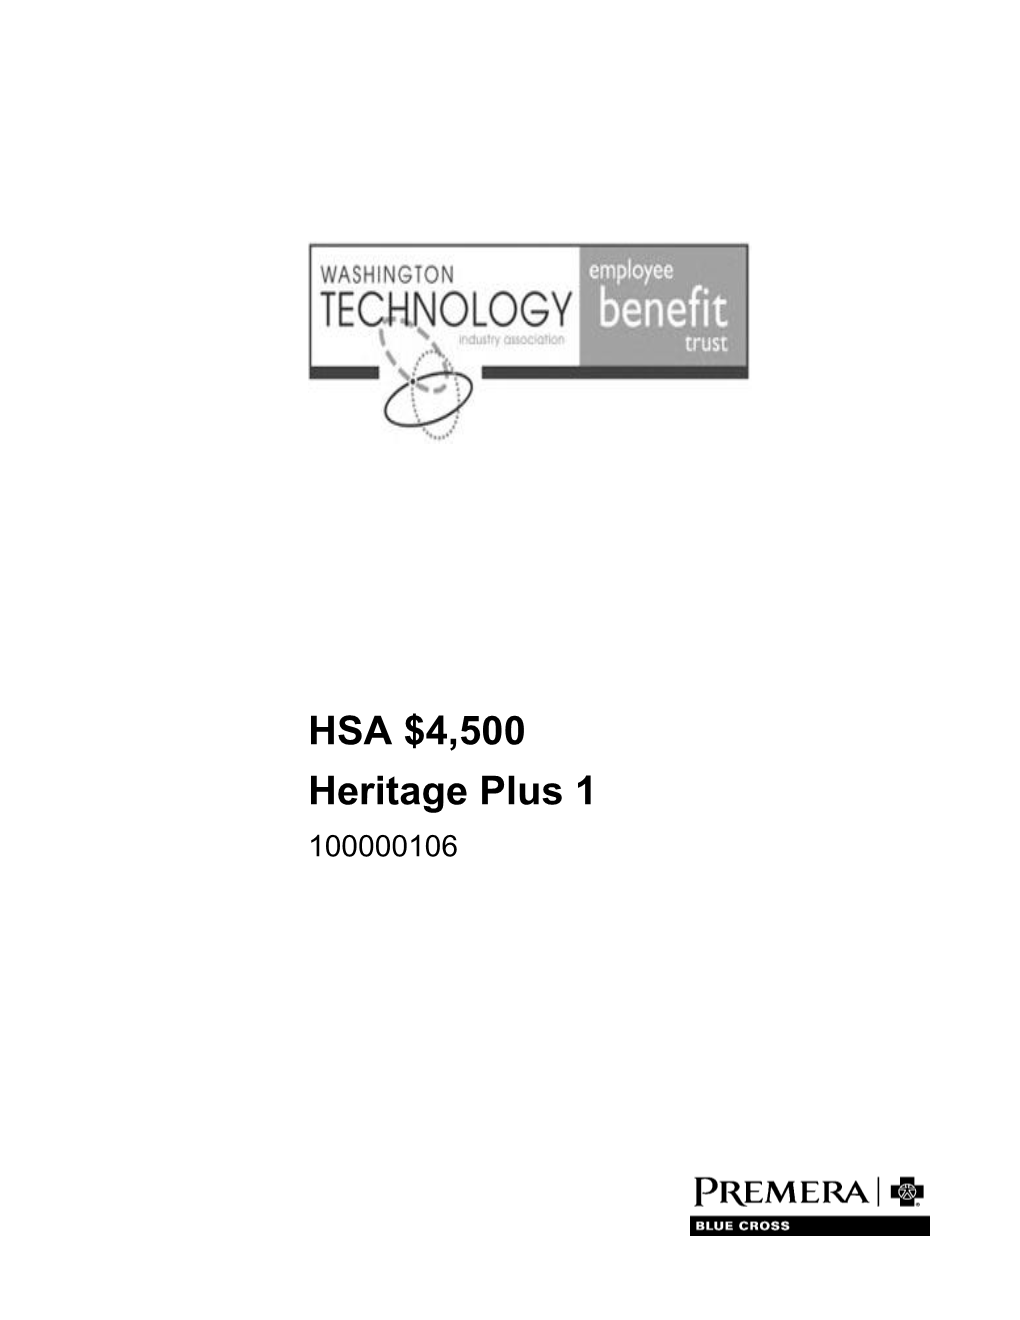 HSA $4500 Heritage Plus 1